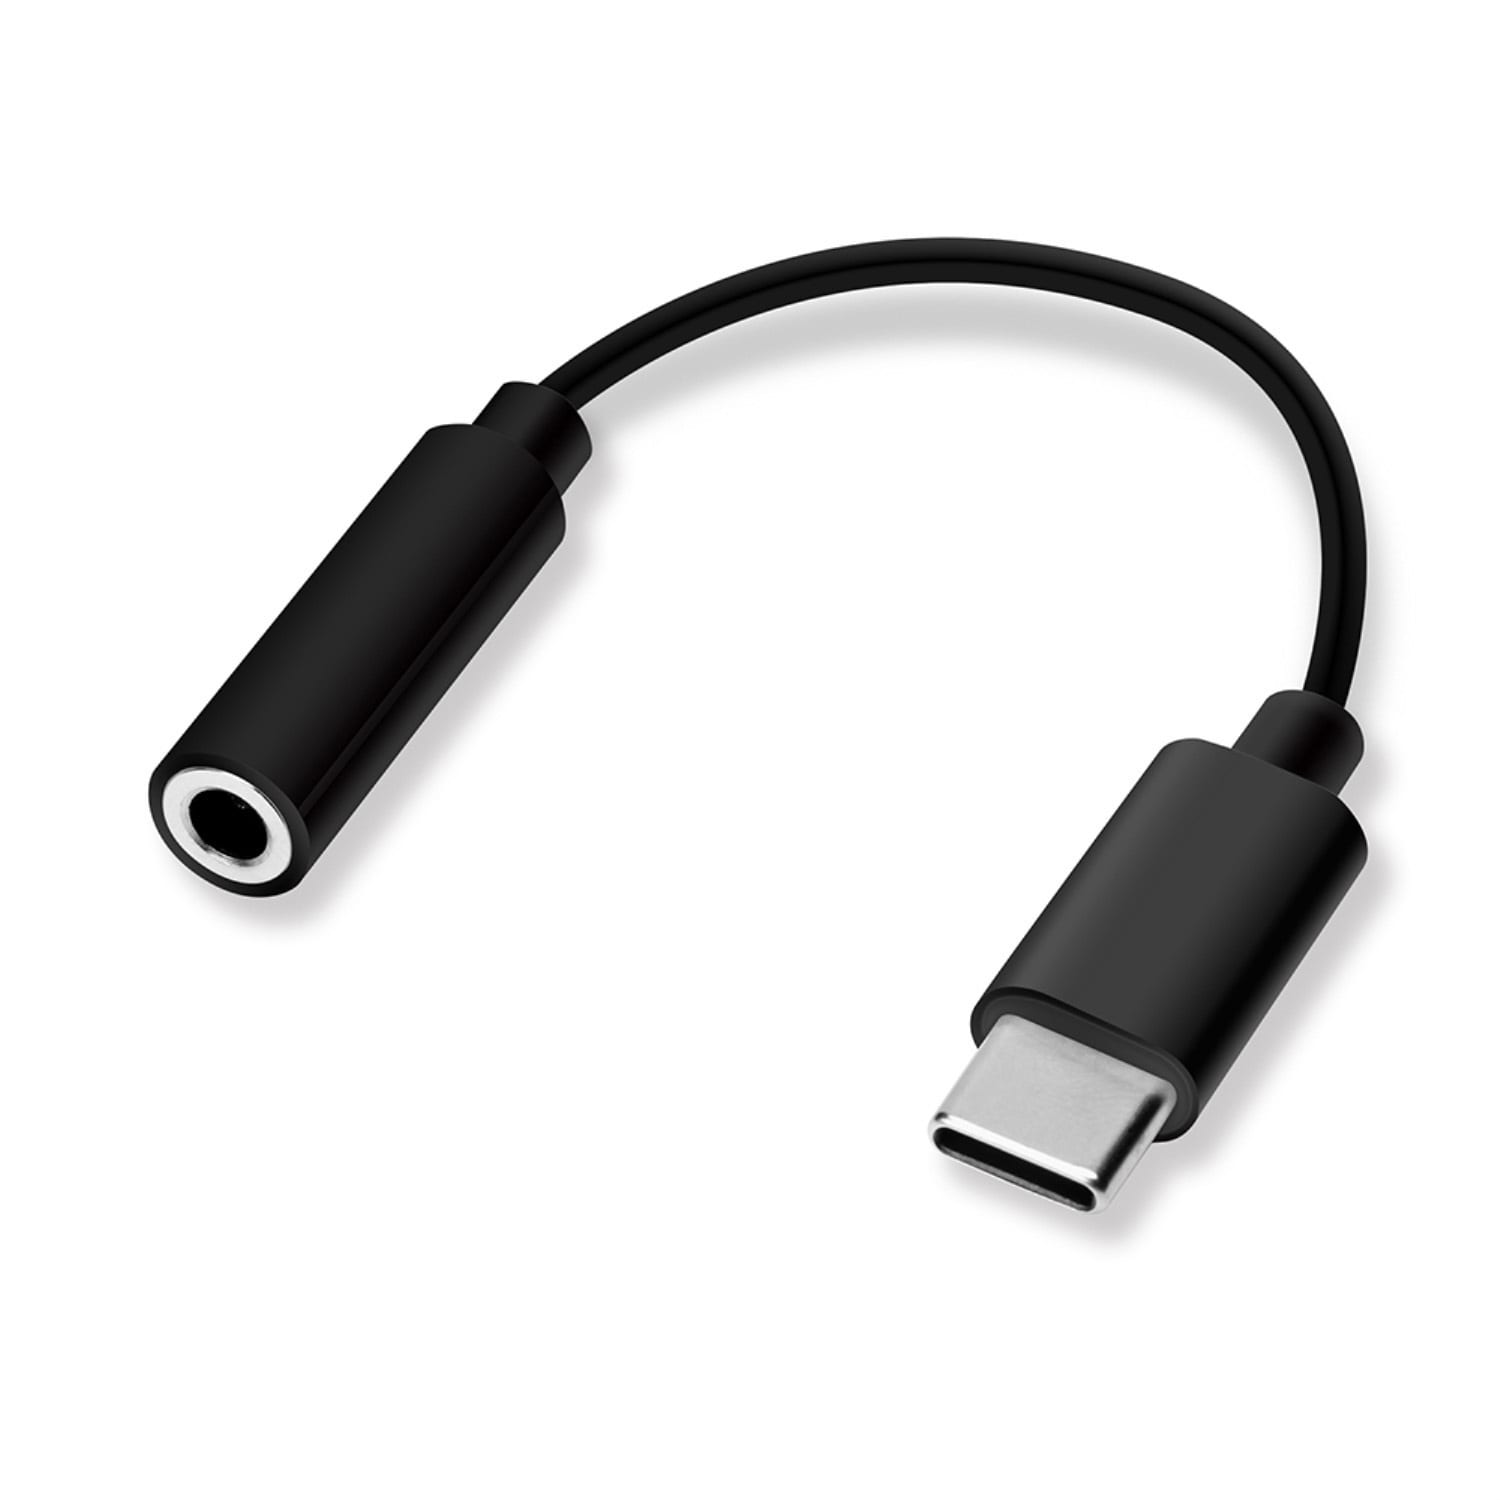 USB タイプC to 3.5mm イヤホン変換アダプタ Type-C m4q